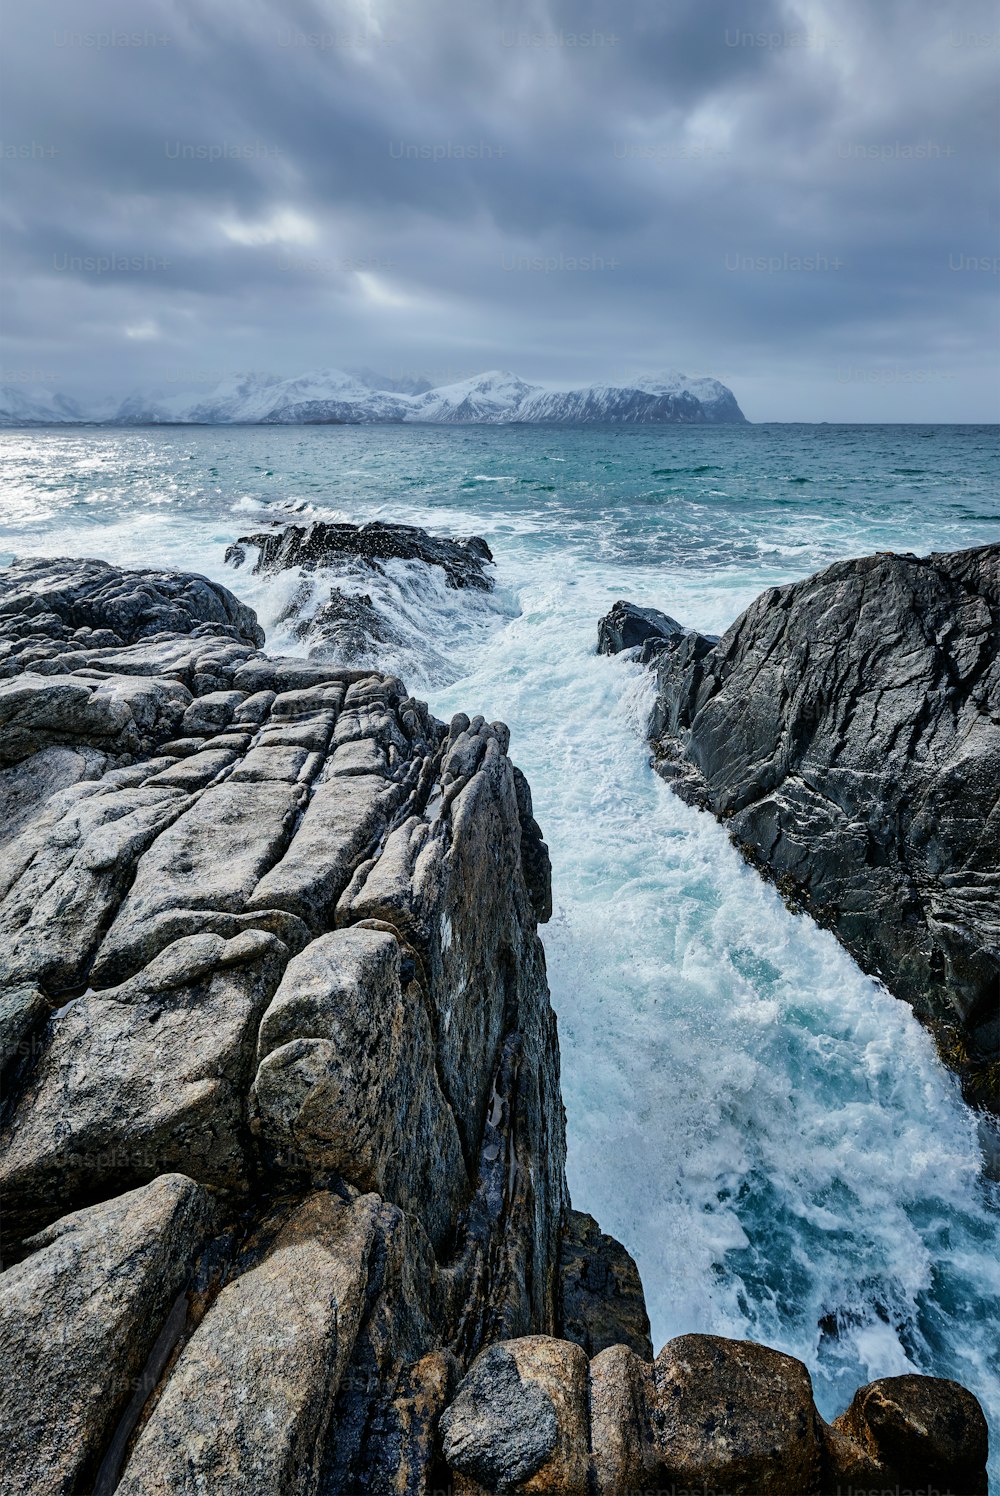 Onde del mare norvegese che si schiacciano sulla costa rocciosa nel fiordo. Vikten, Isole Lofoten, Norvegia